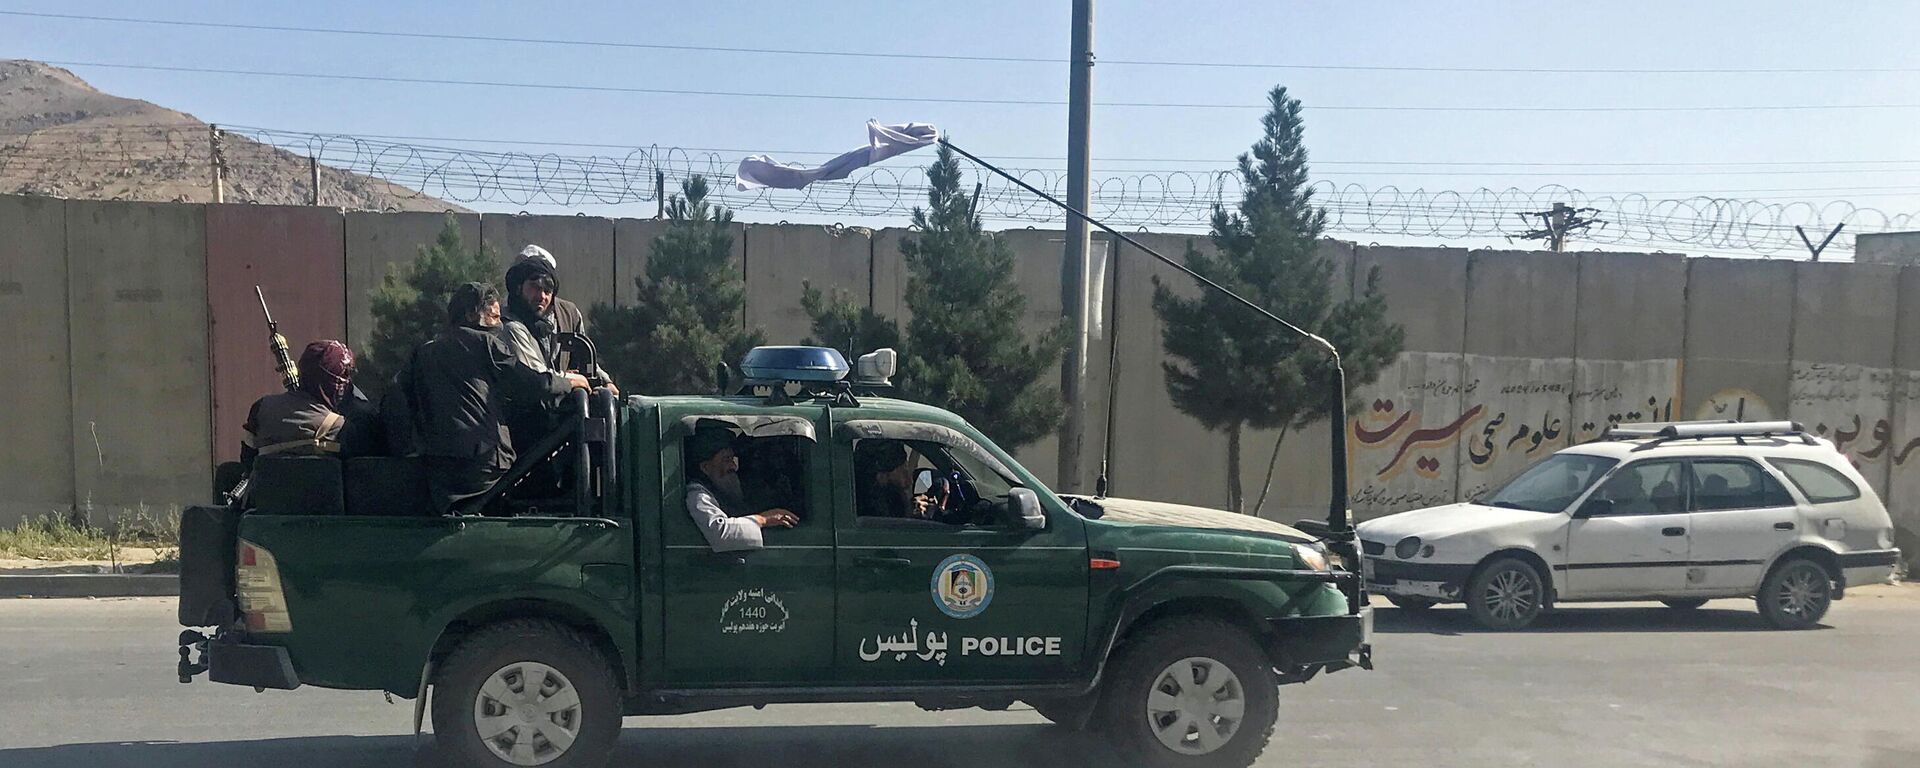 Боевики радикального движения Талибан едут на полицейской машине в Кабуле - Sputnik Литва, 1920, 29.08.2021